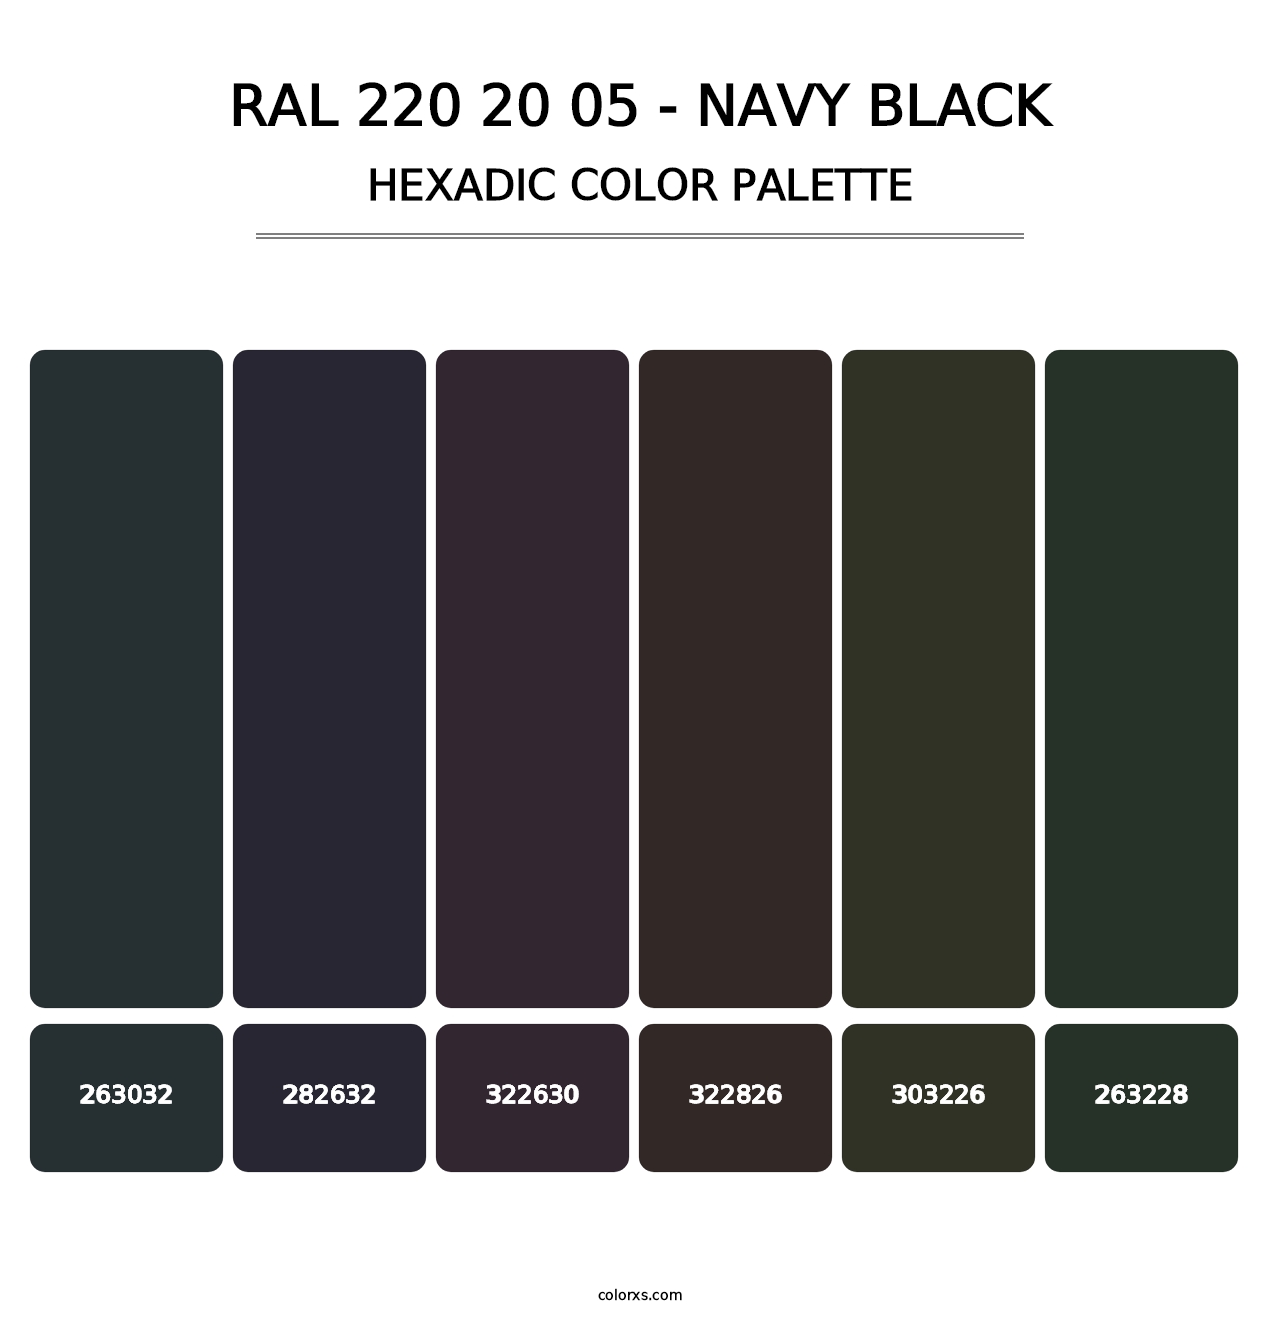 RAL 220 20 05 - Navy Black - Hexadic Color Palette